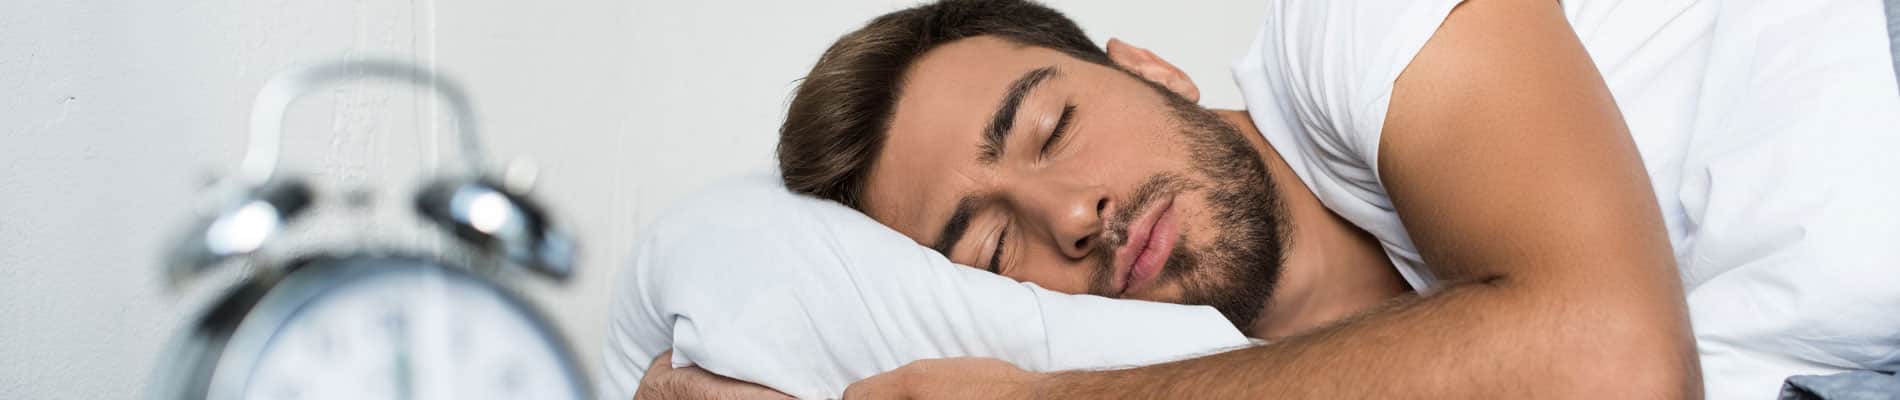 consejos para dormir mejor